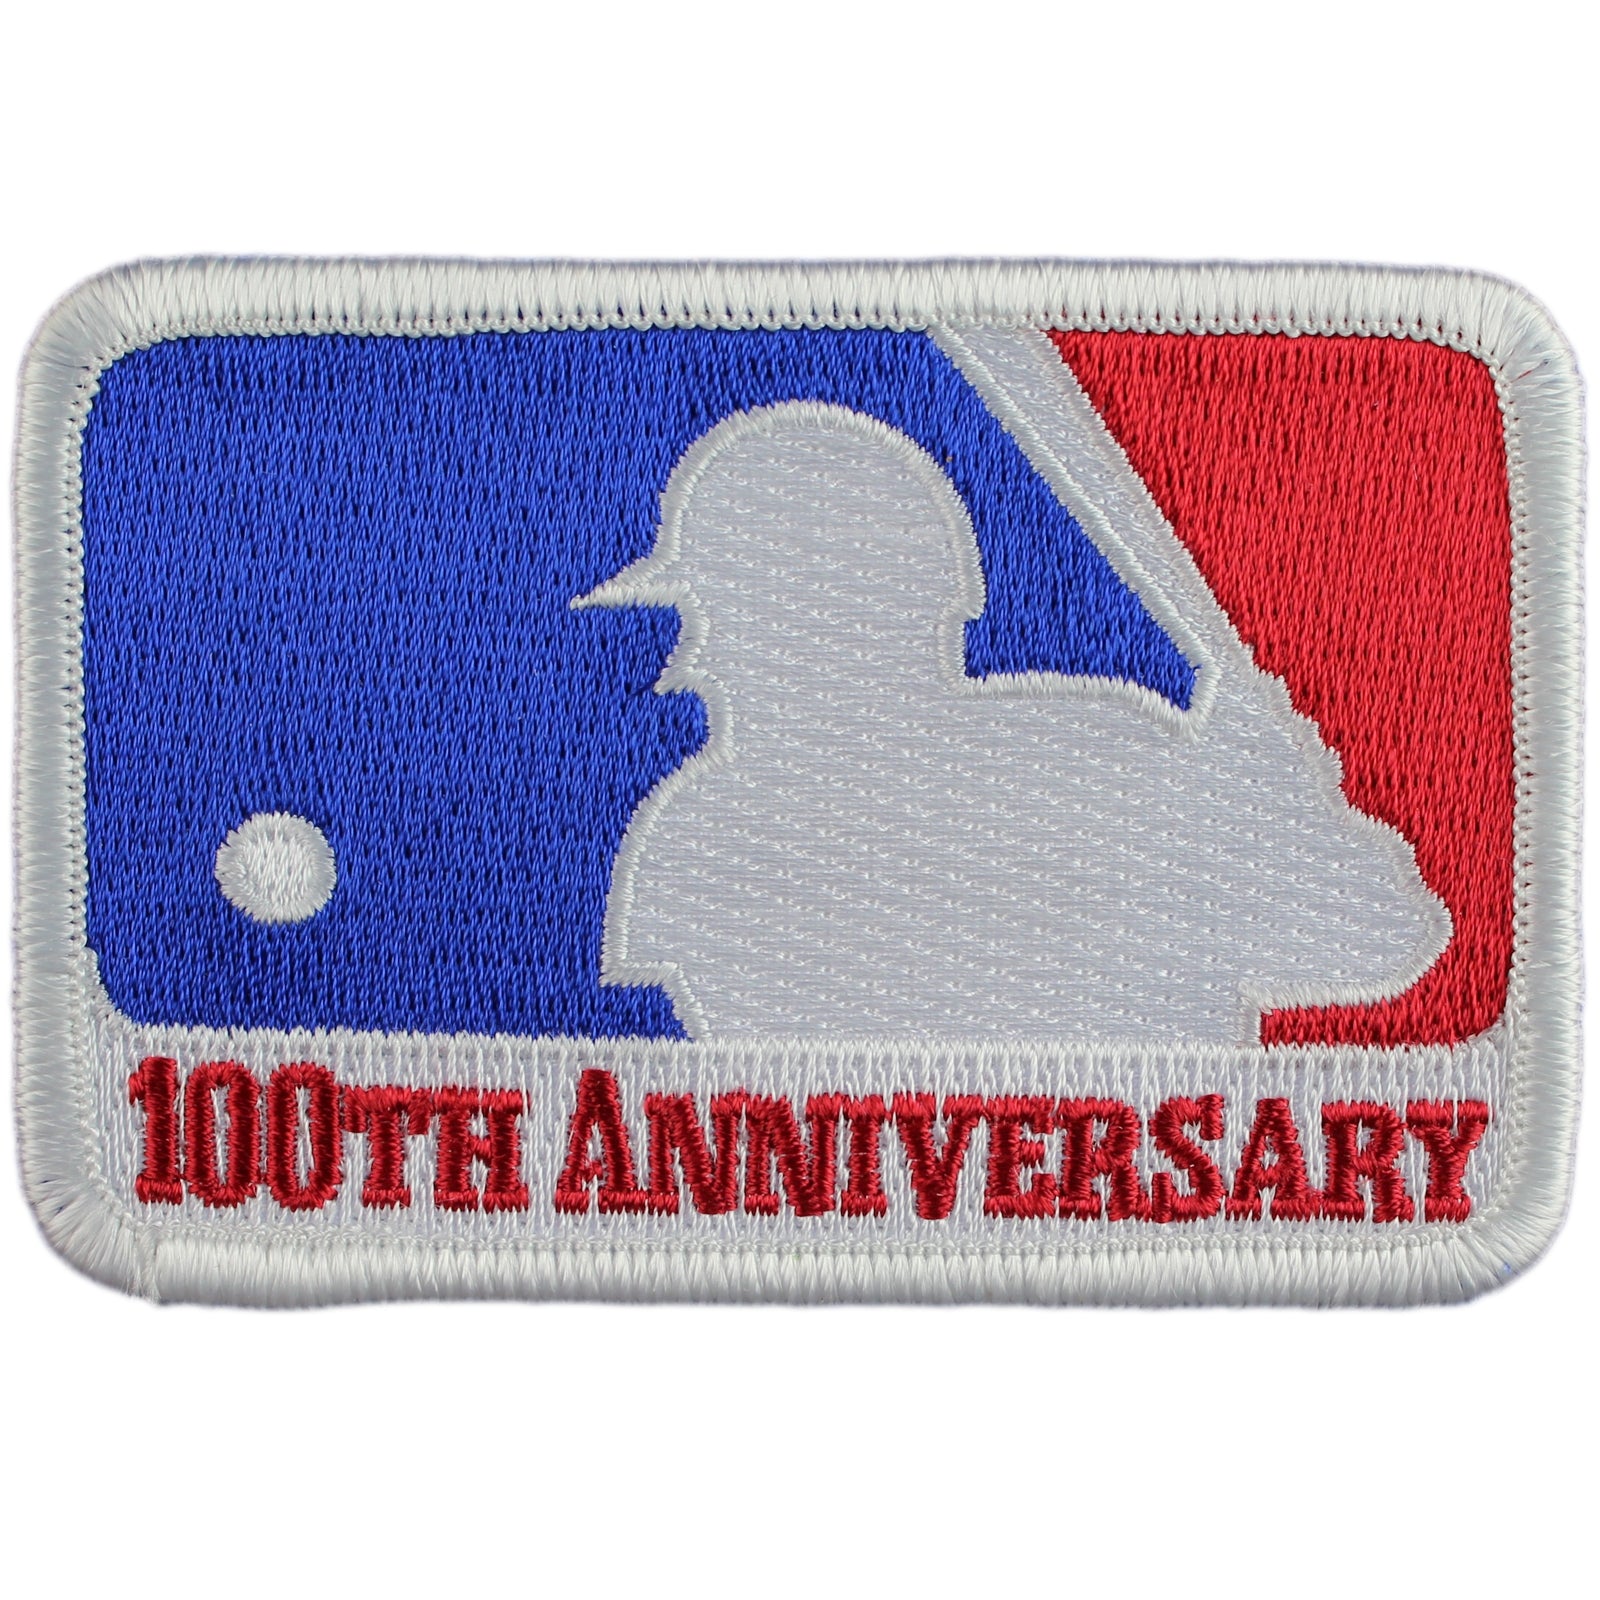 MLB NLB 100th Anniversary Patch - Lids